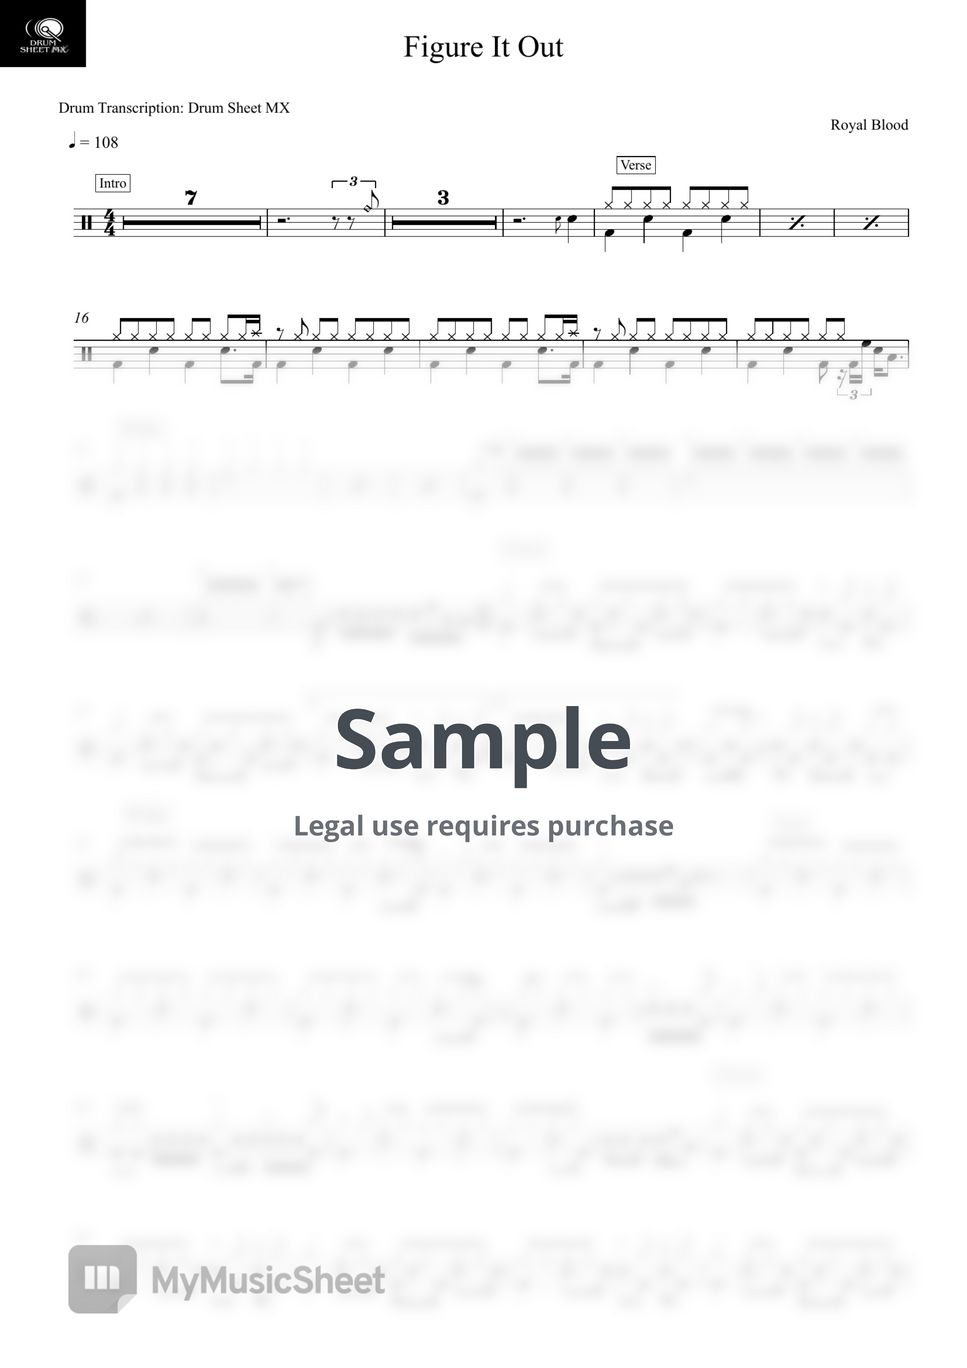 Royal Blood - Figure It Out by Drum Transcription: Drum Sheet MX